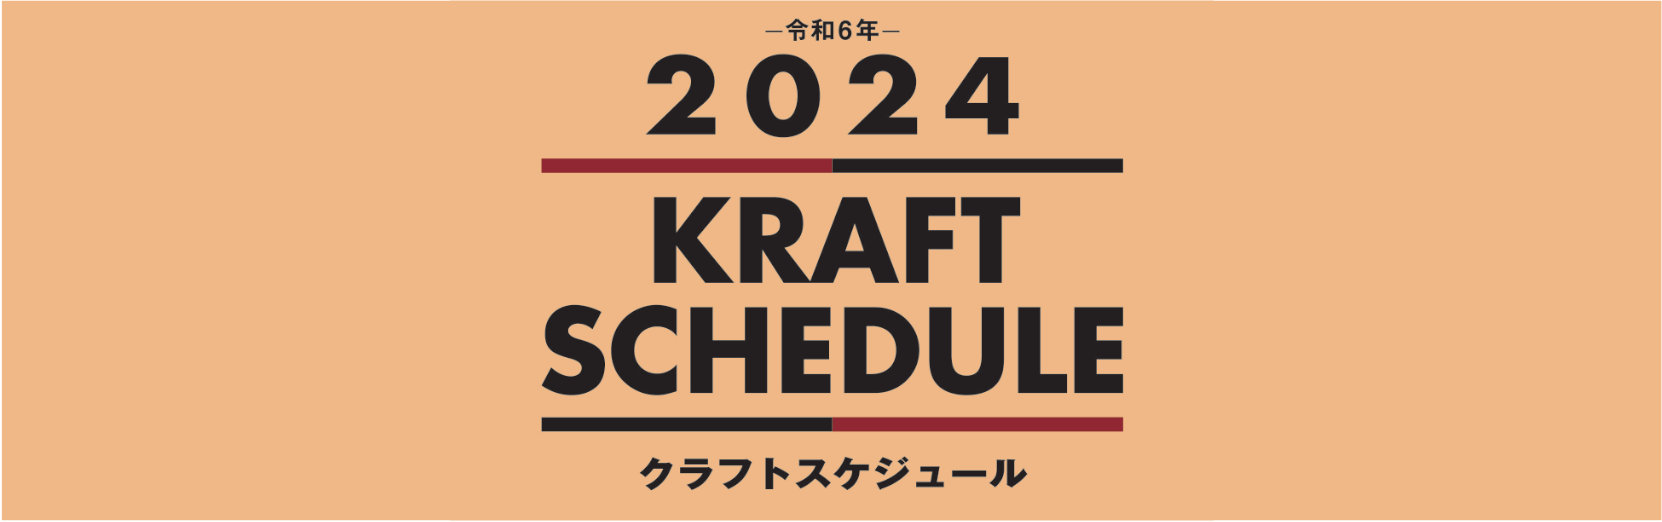 クラフトスケジュール 2024年版カレンダー